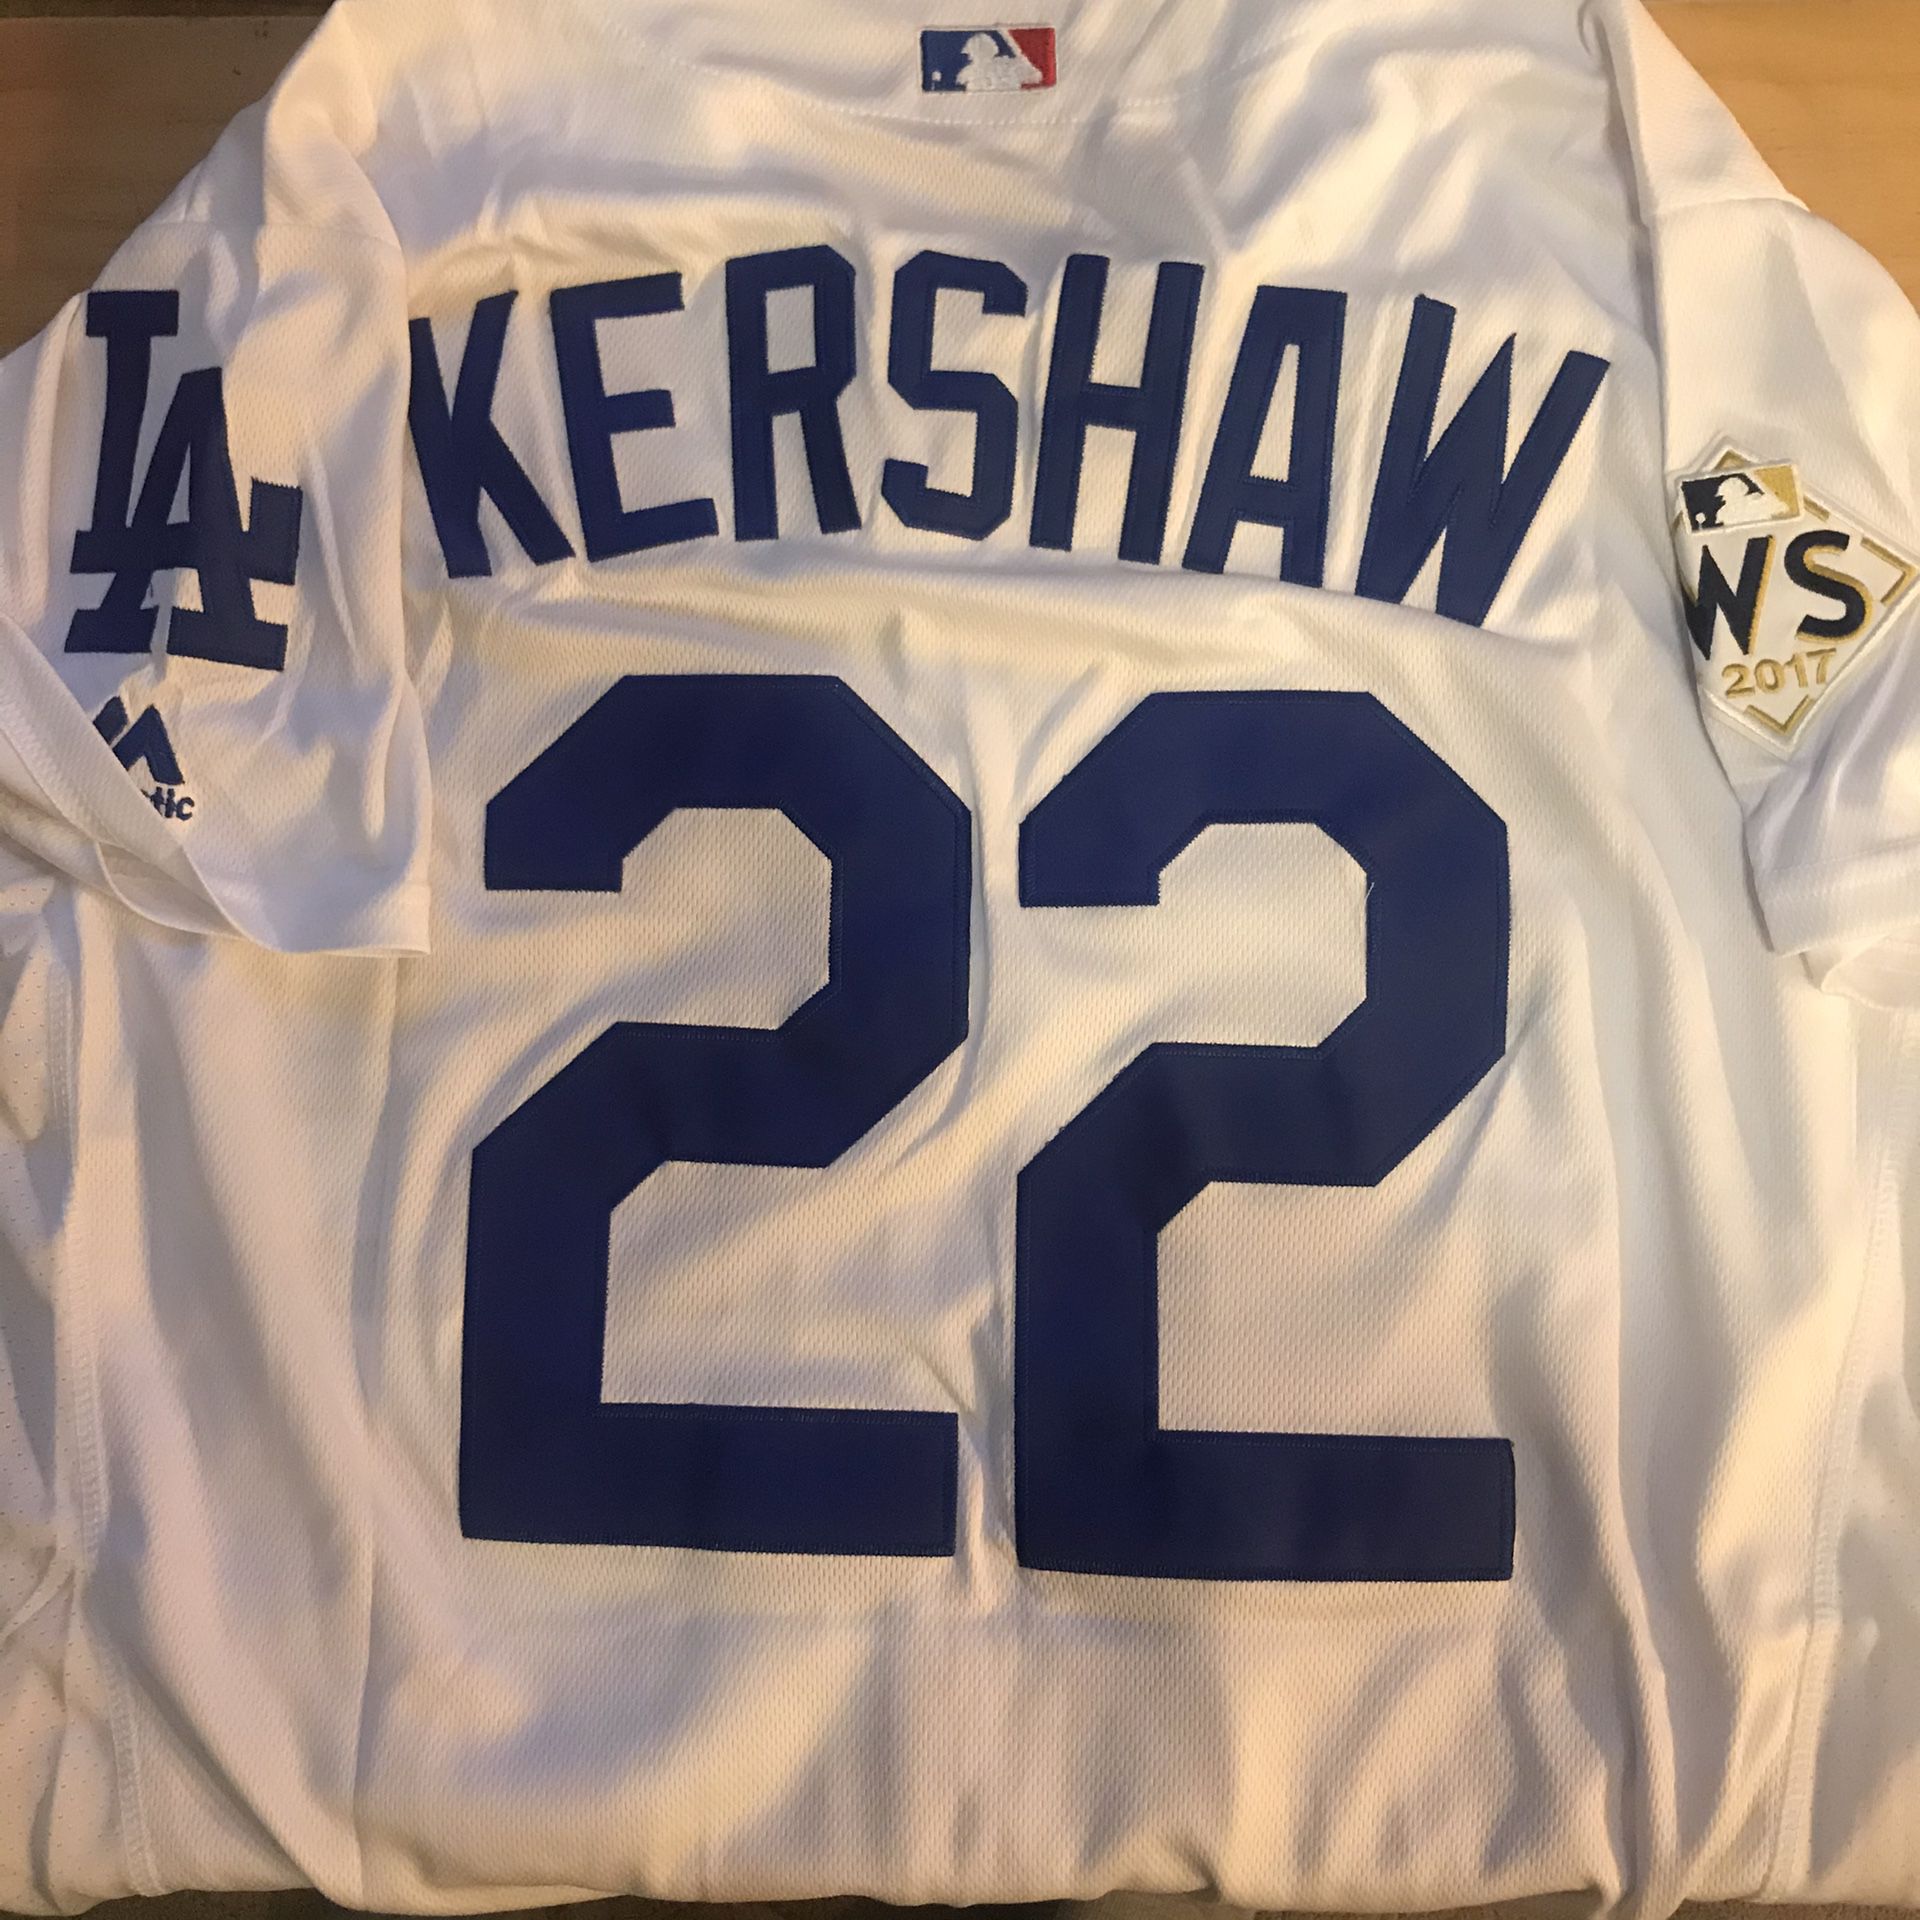 Kershaw jersey LA Dodgers WS baseball